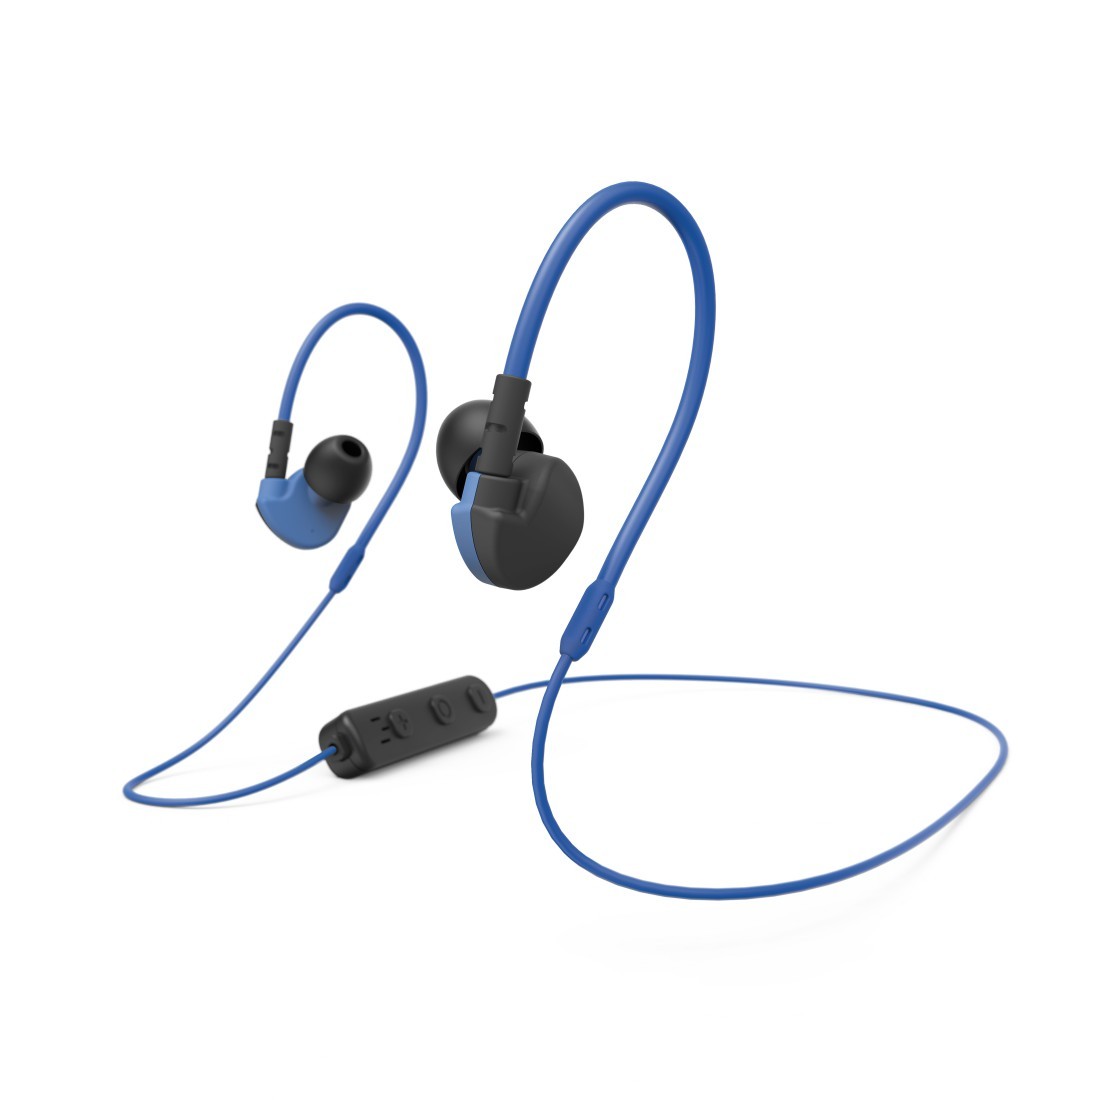 eingebautes Mikofon Bluetooth Kopfhörer In Ear ETMURY Noise Cancelling Kopfhörer Kabellos Musik Kopfhörer HiFi Super Stereo Bluetooth in Ear Magnetischer Sport Ohrhörer Joggen/Laufen/Fitness 